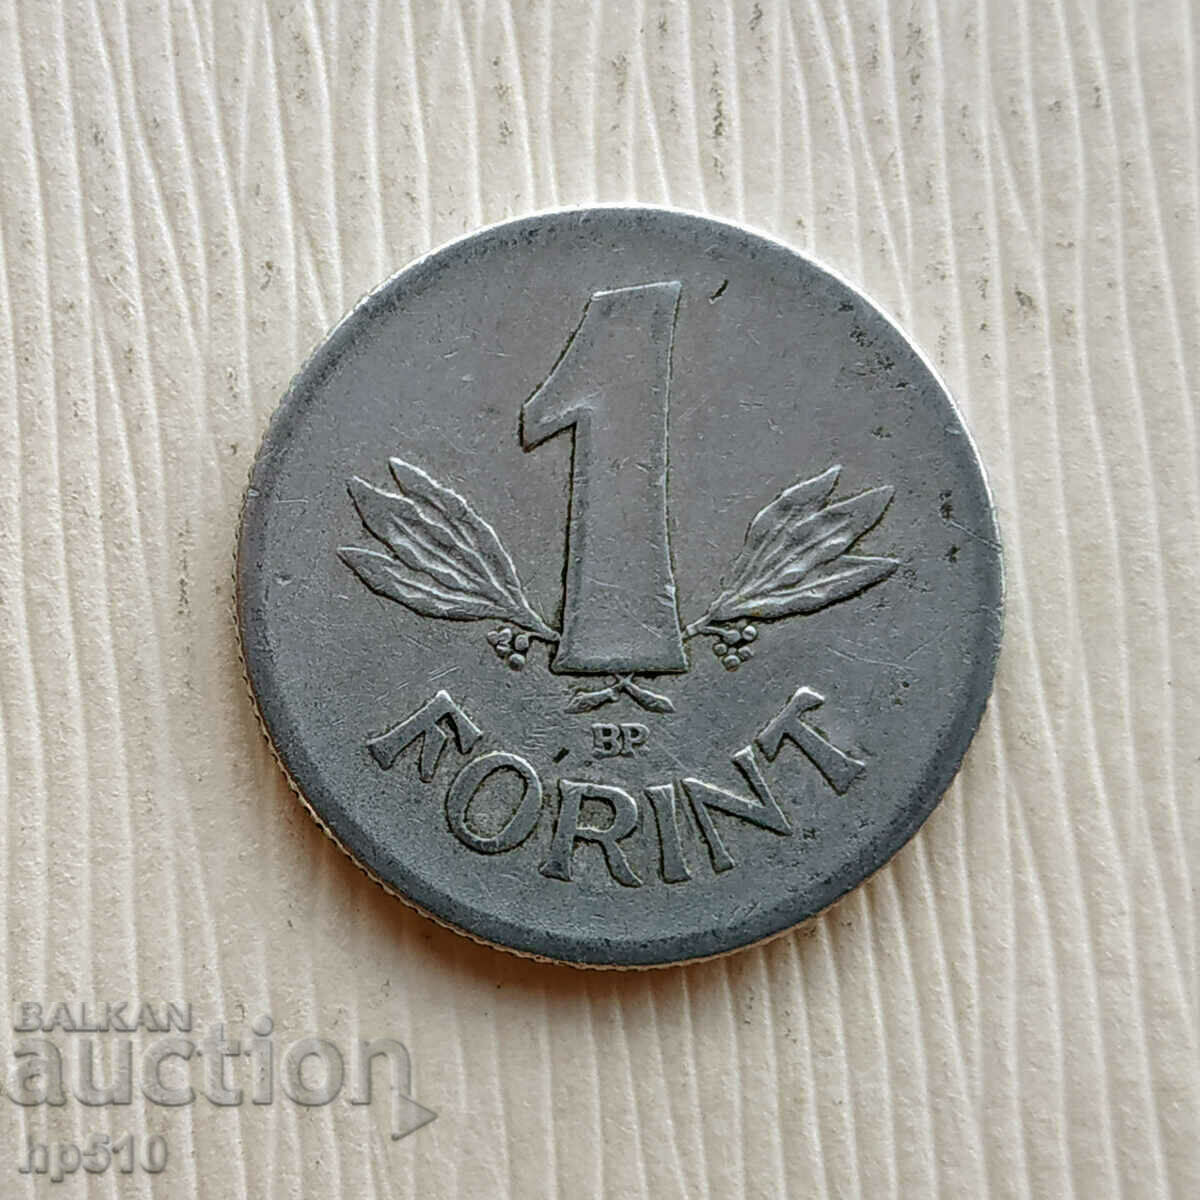 Ungaria 1 forint 1969 / Ungaria 1 Forint 1969